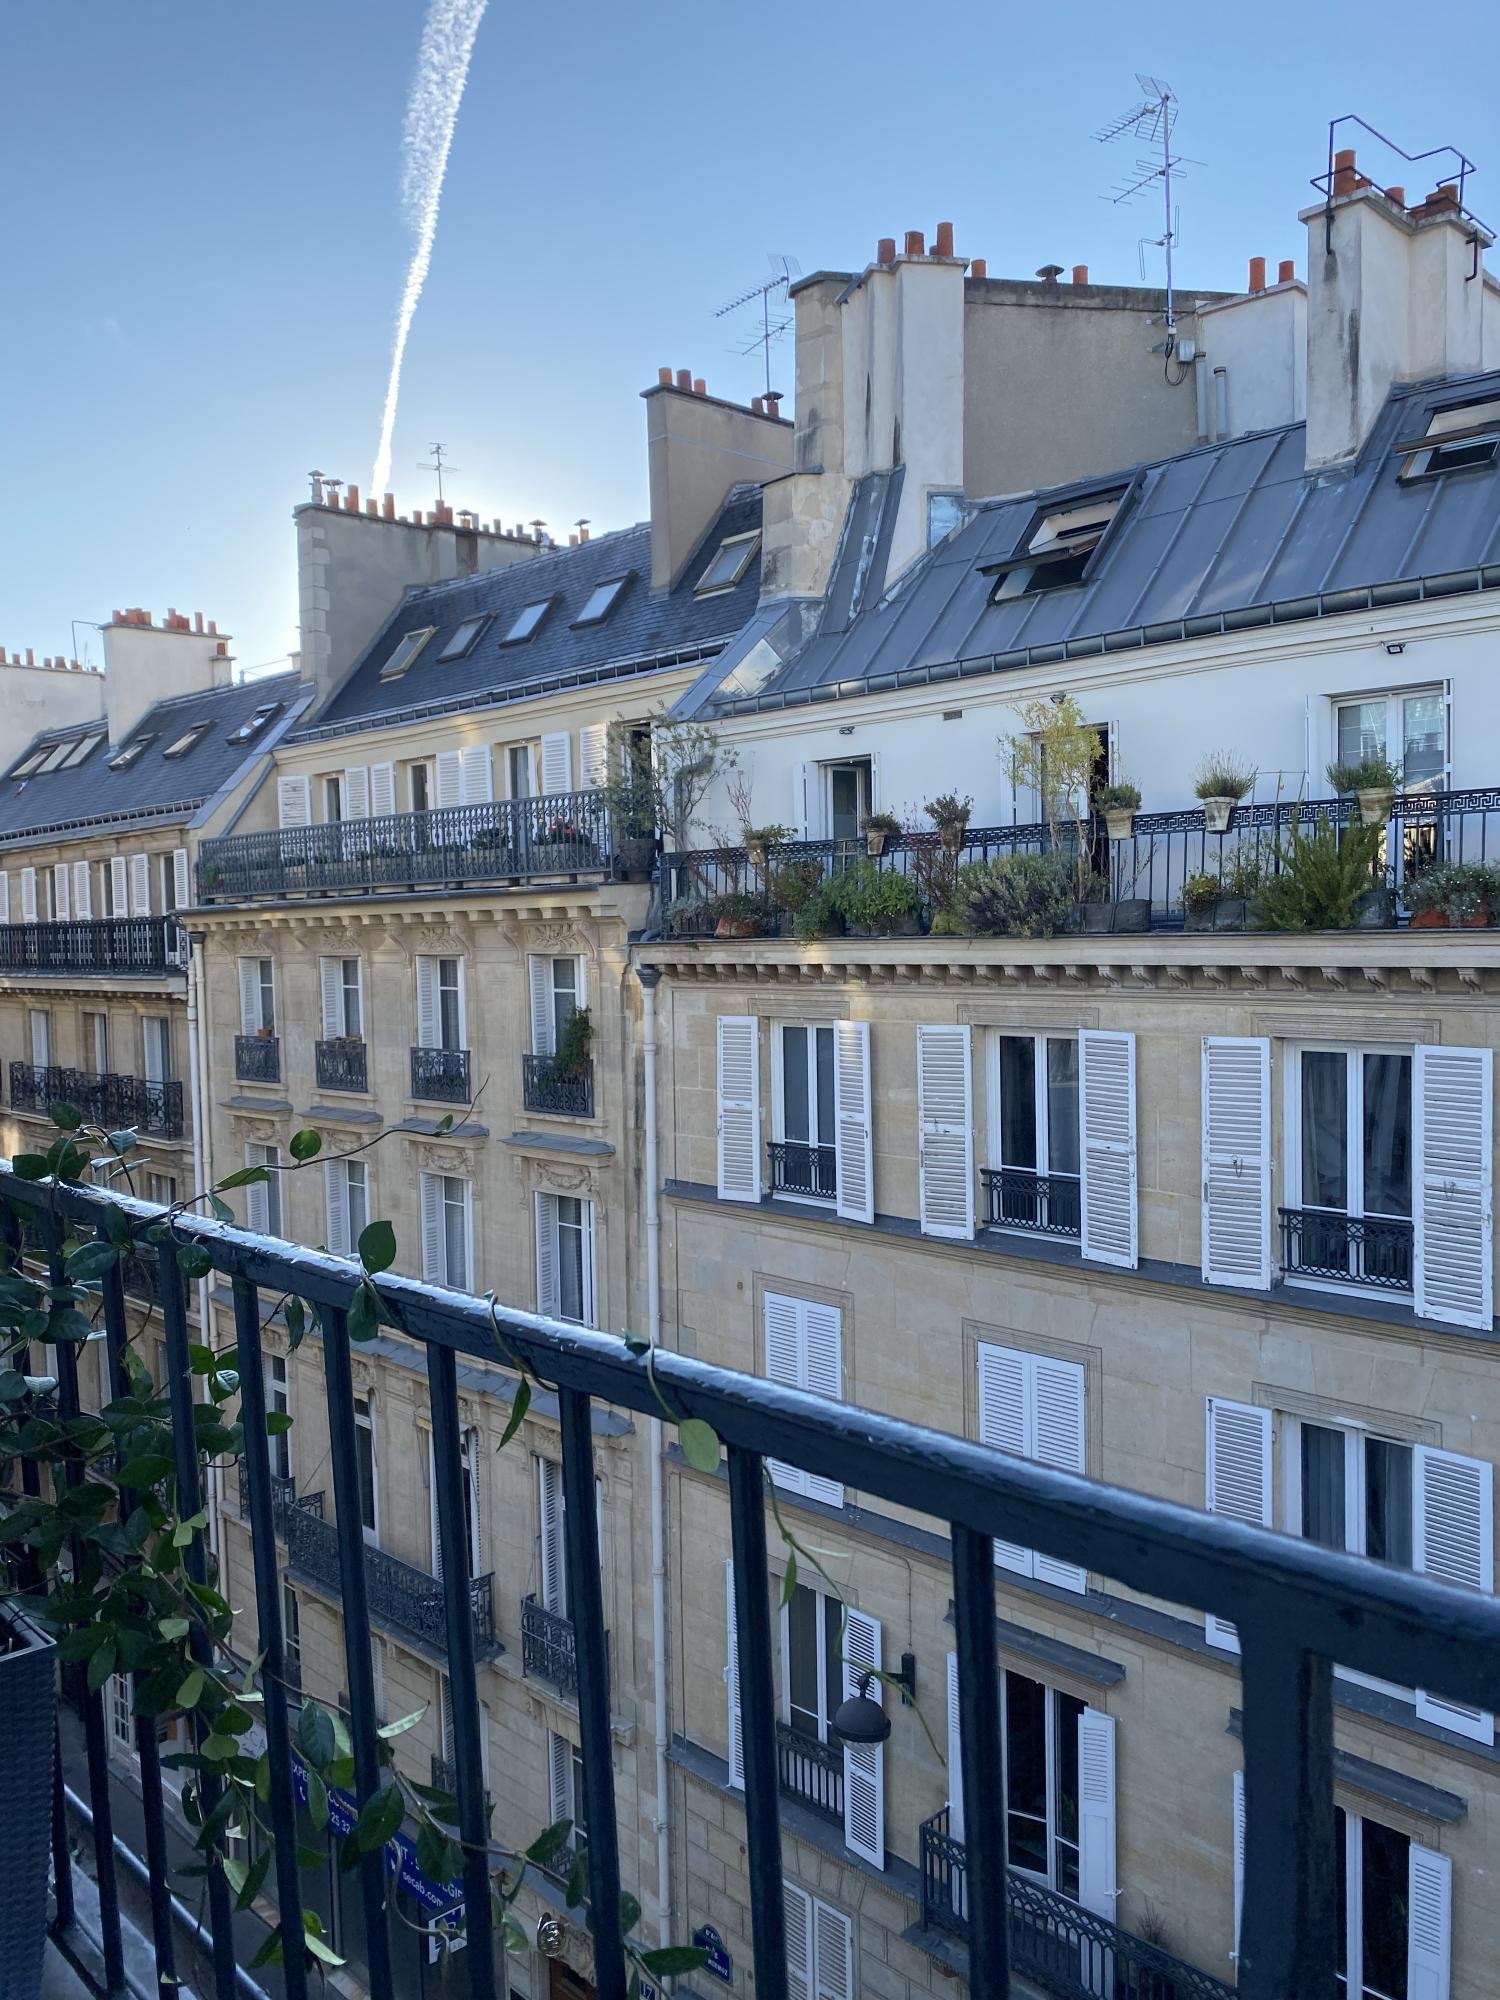 Nuage Hôtel Paris | View of the roofs of Paris